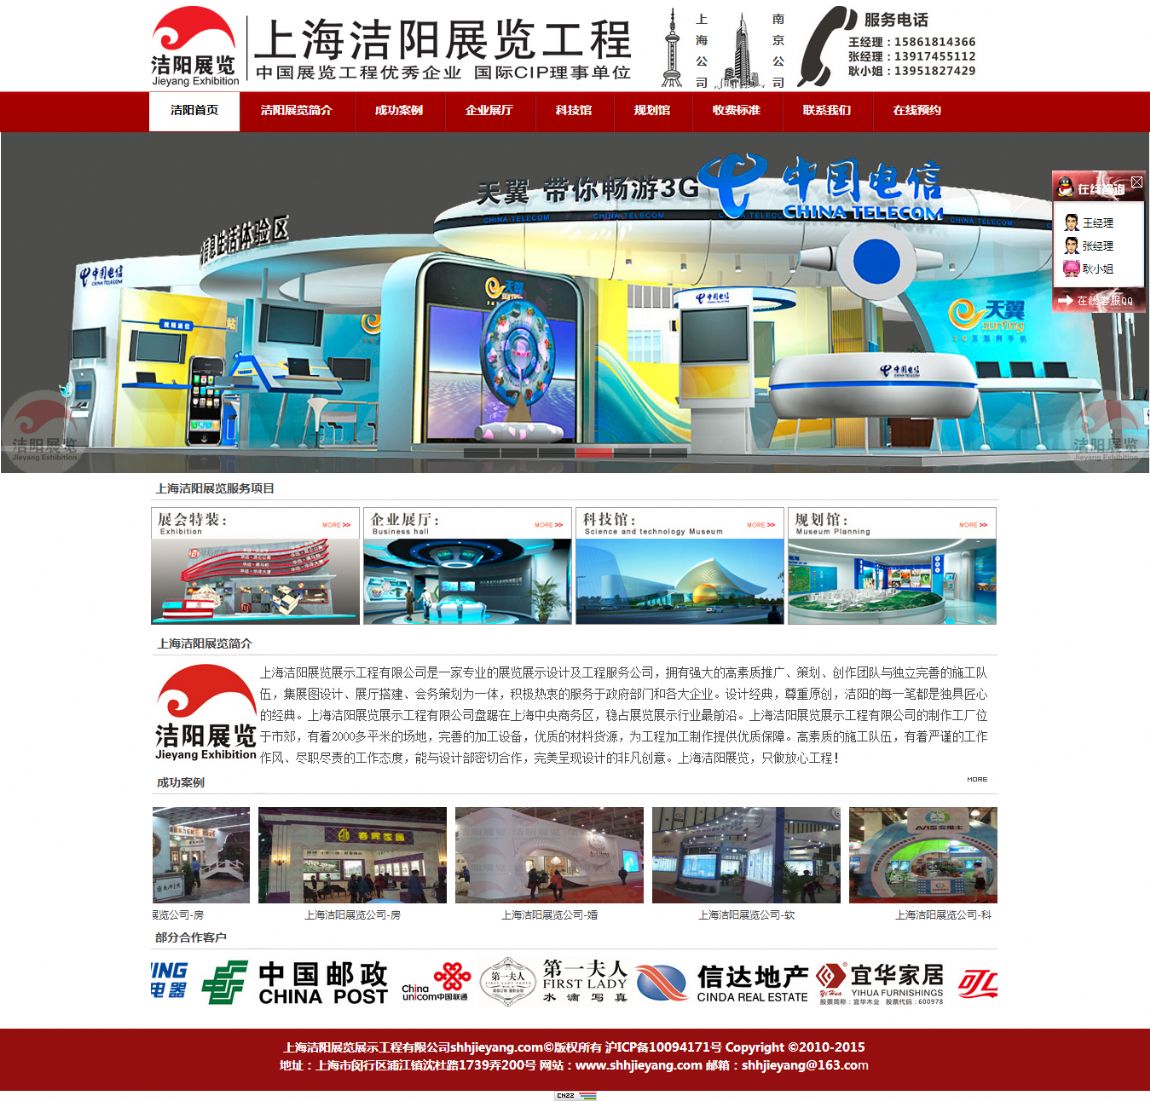 上海潔陽展覽示工程有限公司